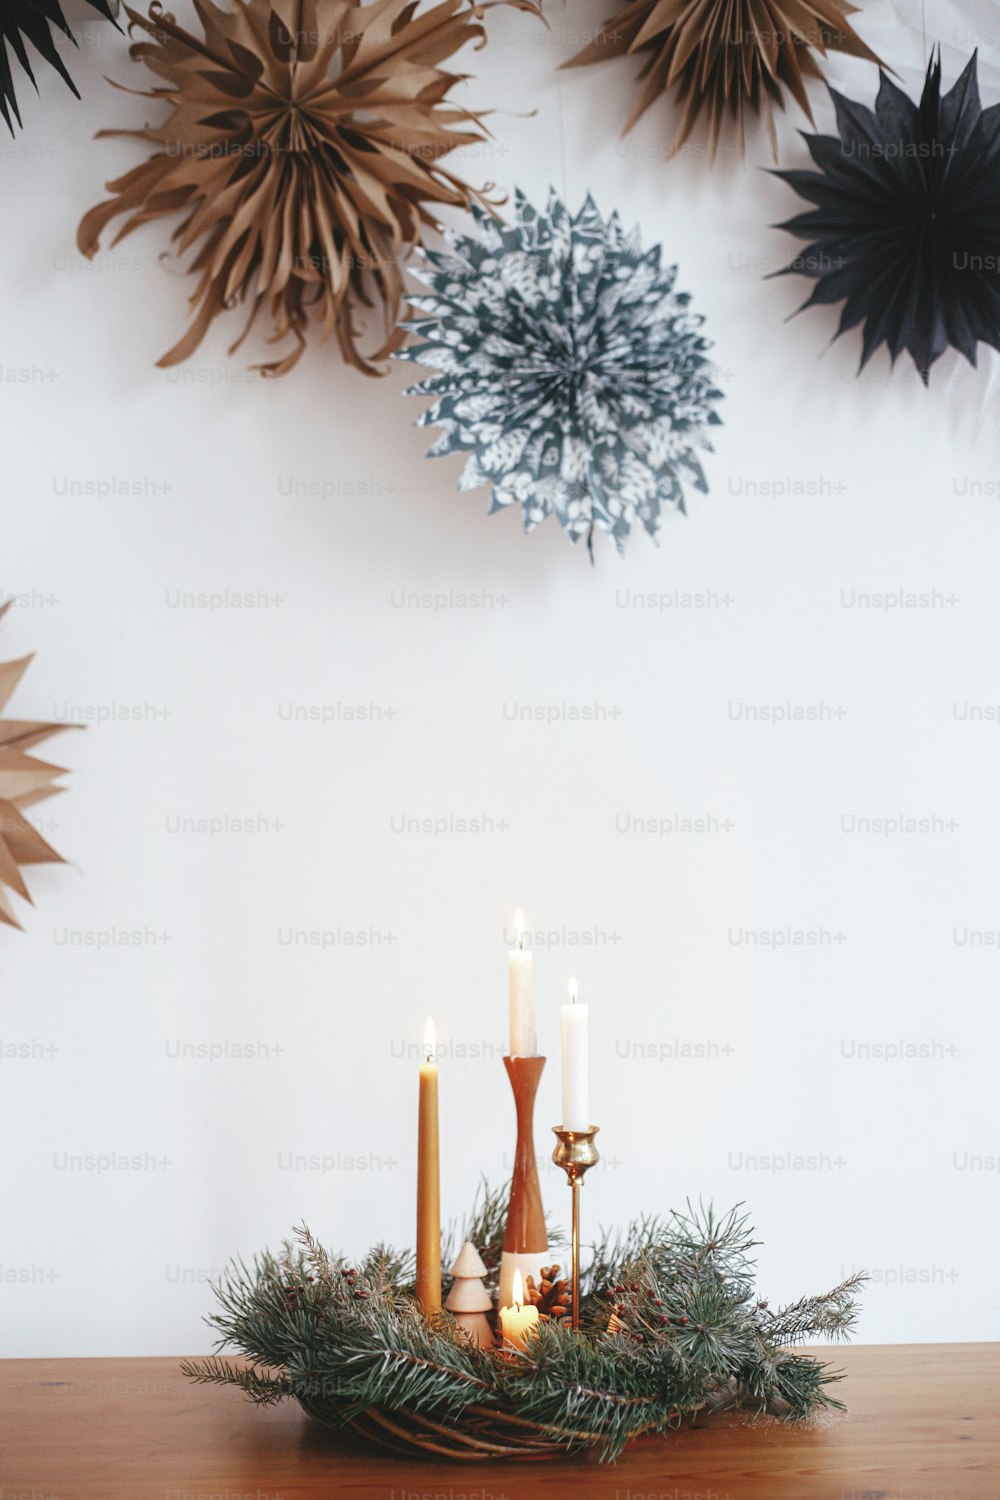 Elegante ghirlanda di natale con candele e decorazioni su tavolo di legno su sfondo di parete bianca con stelle di carta svedese. Atmosferico periodo invernale. Avvento festivo, hygge festivo scandinavo